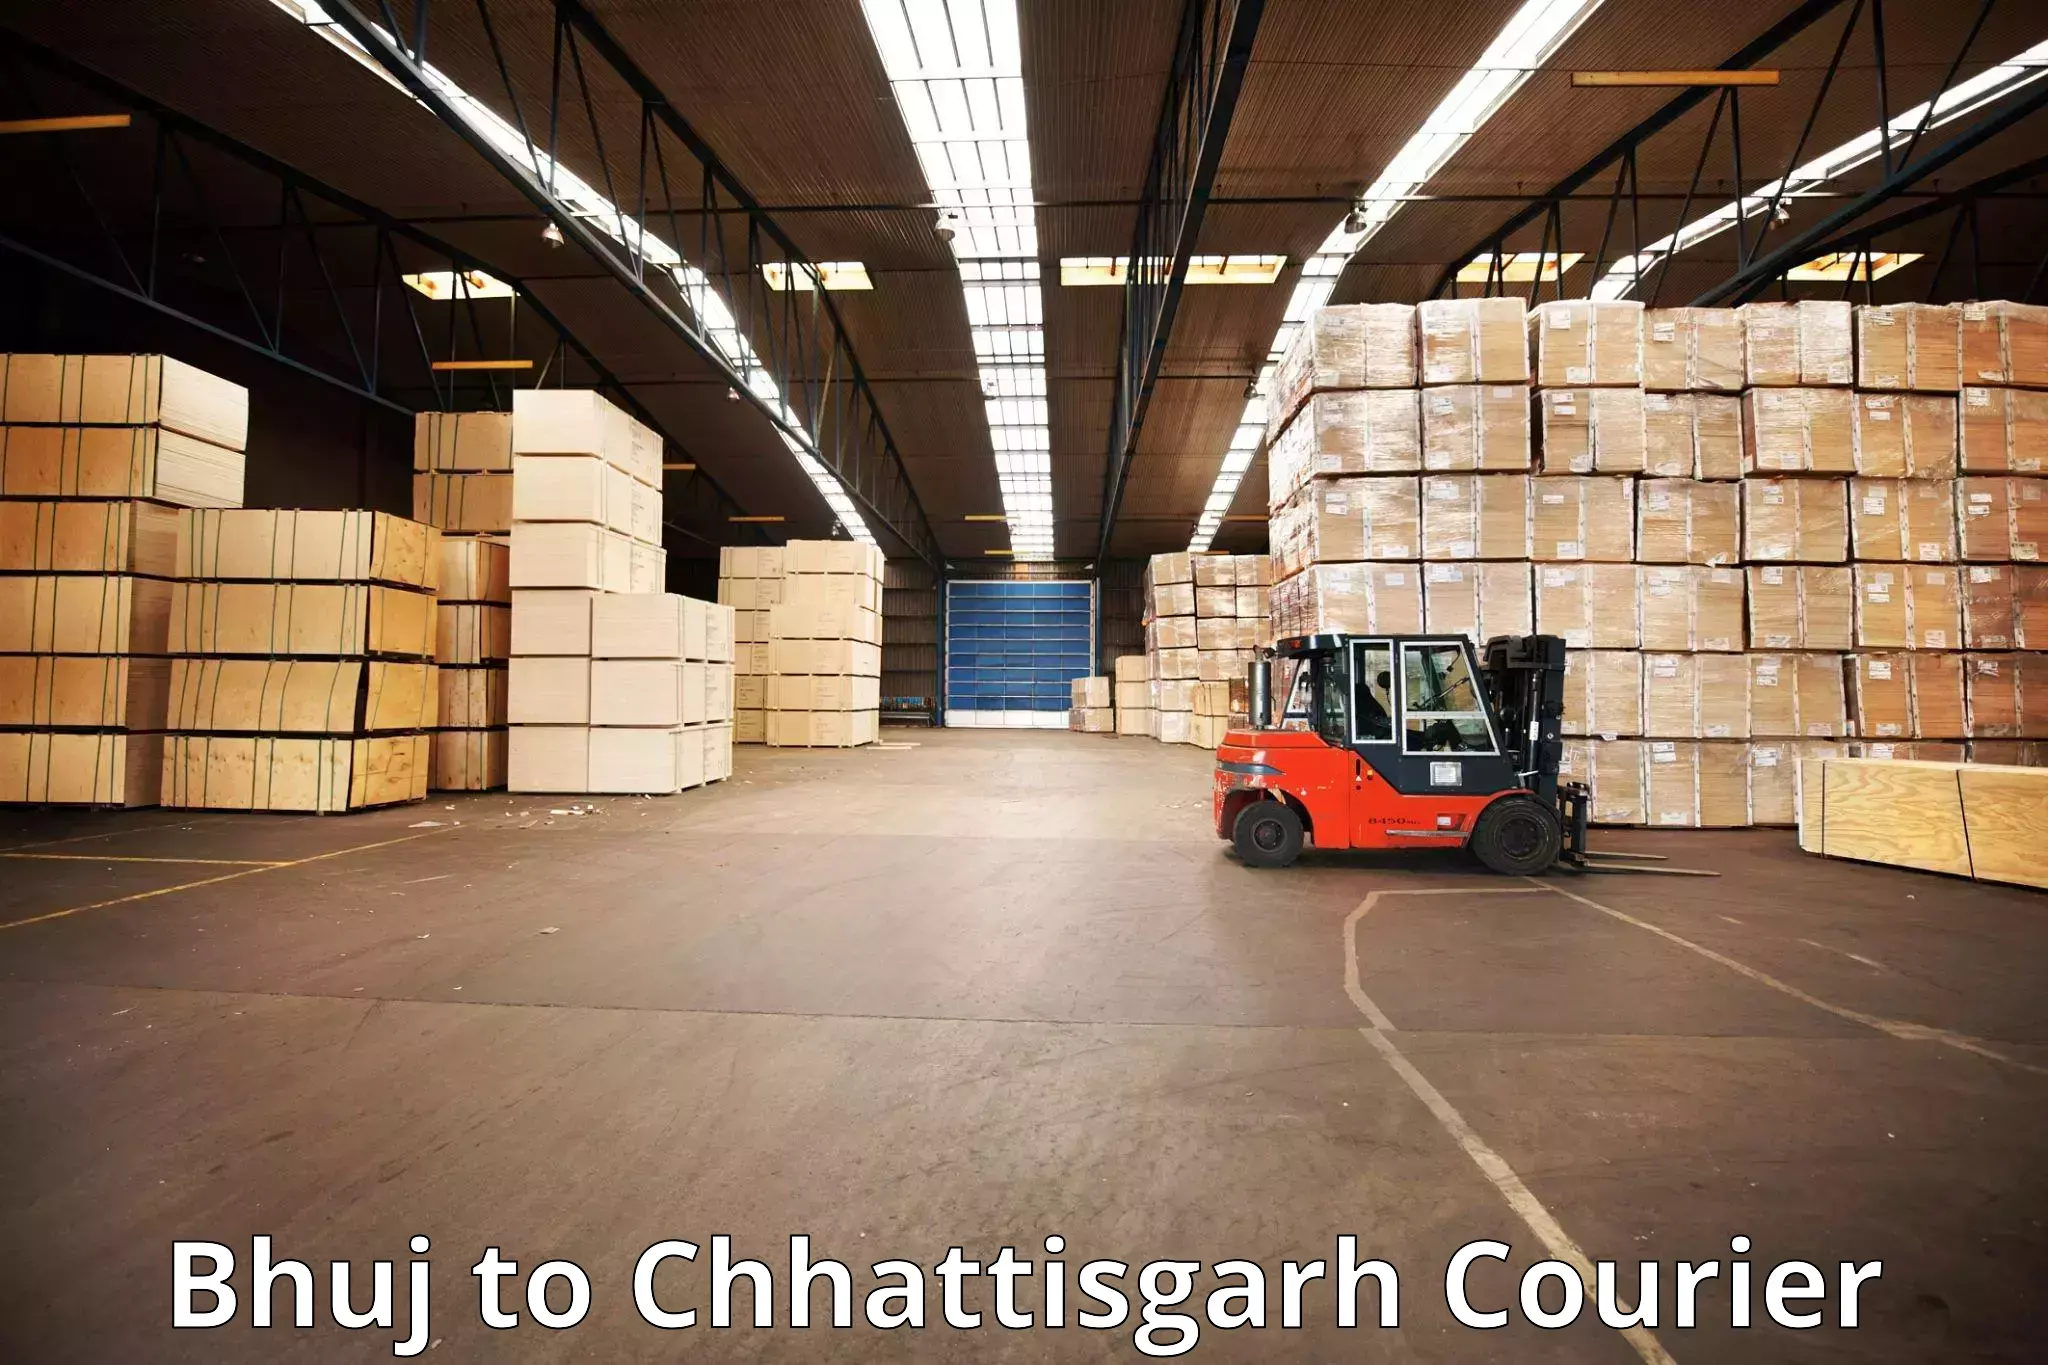 Baggage delivery optimization Bhuj to Chhattisgarh